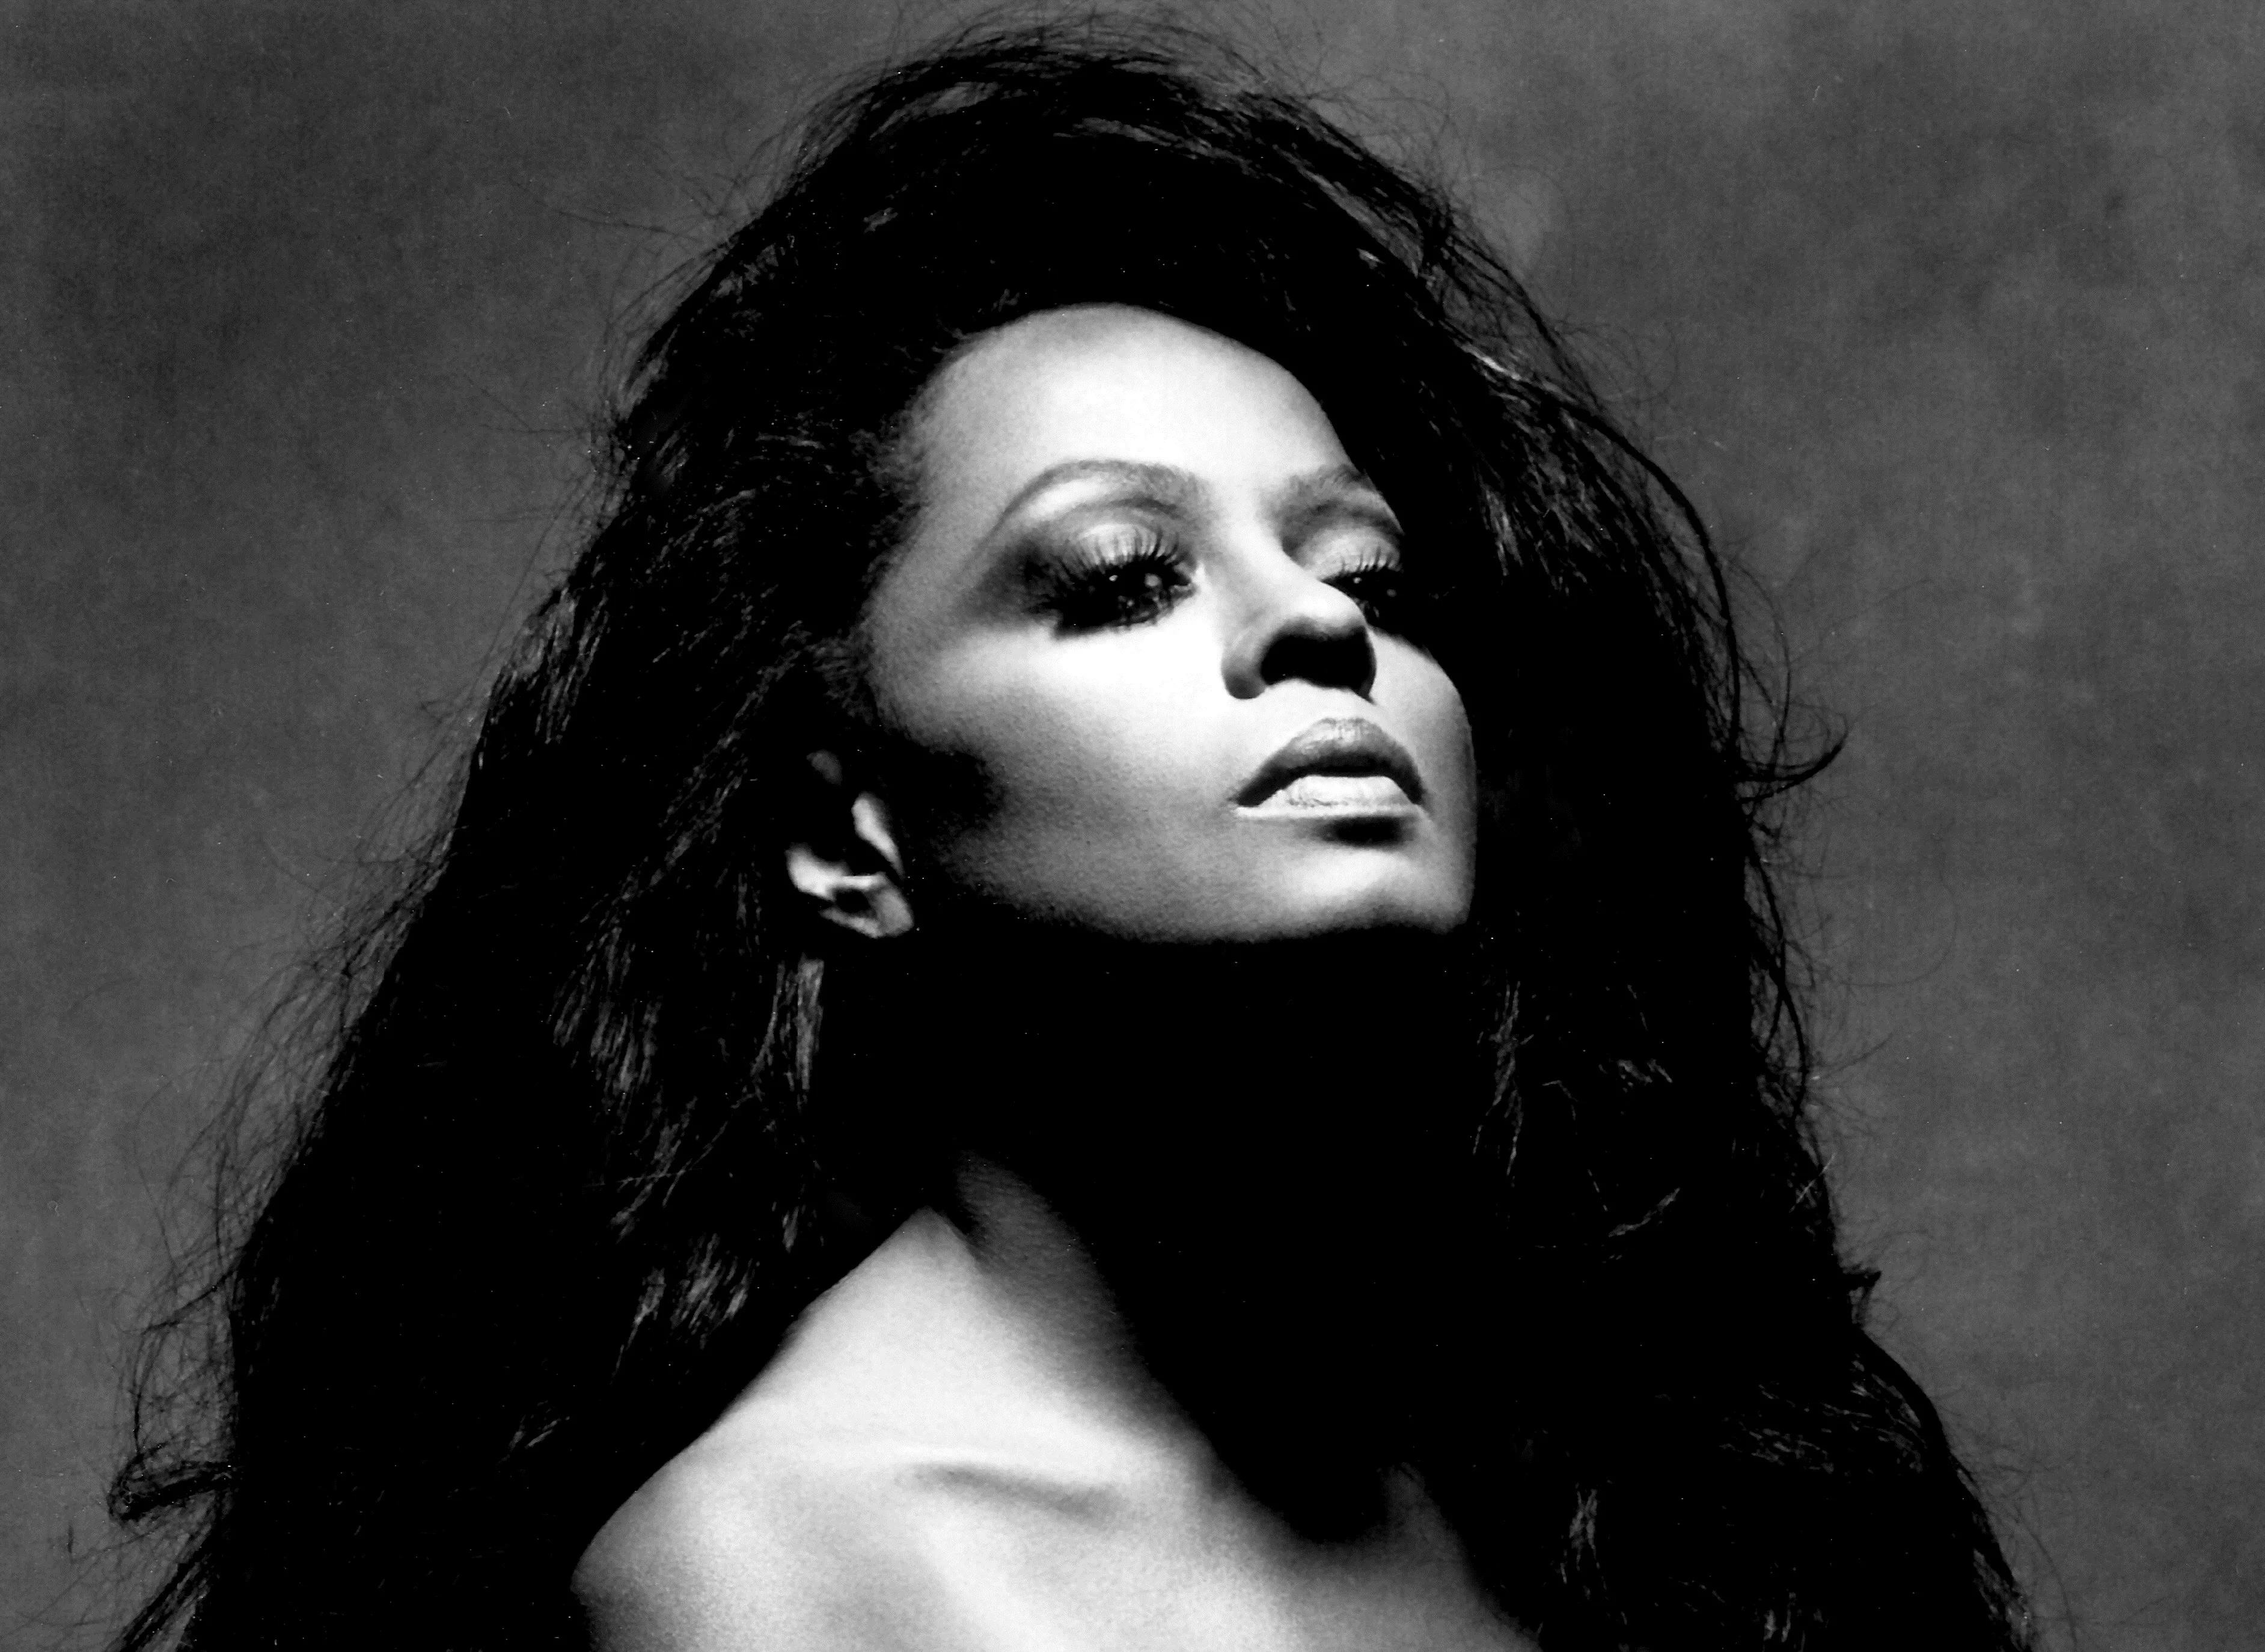 Diana Ross om Jackson-kritik: "Stop i kærlighedens navn"